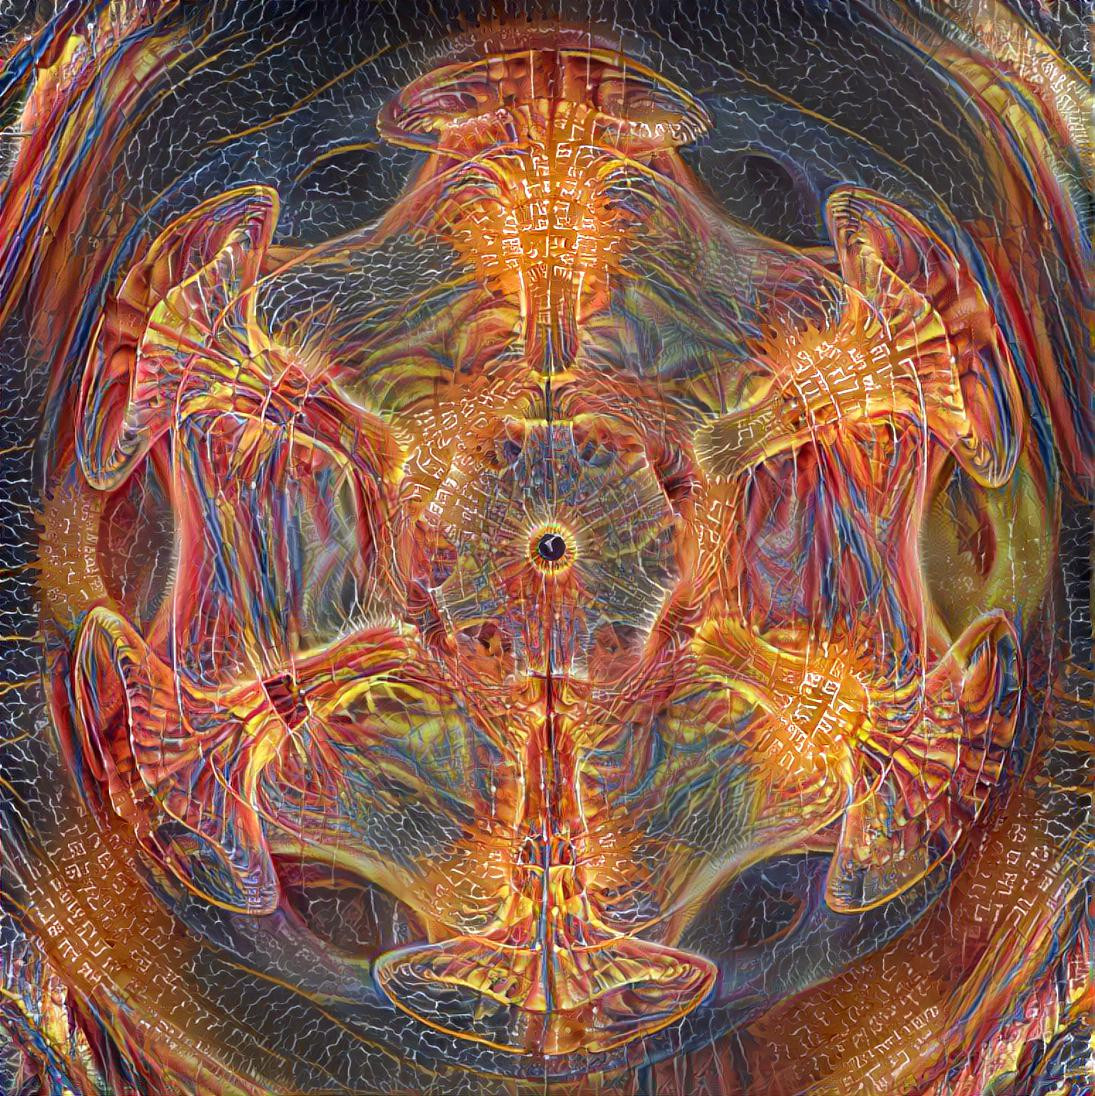 Alex Grey on Cymatics 2